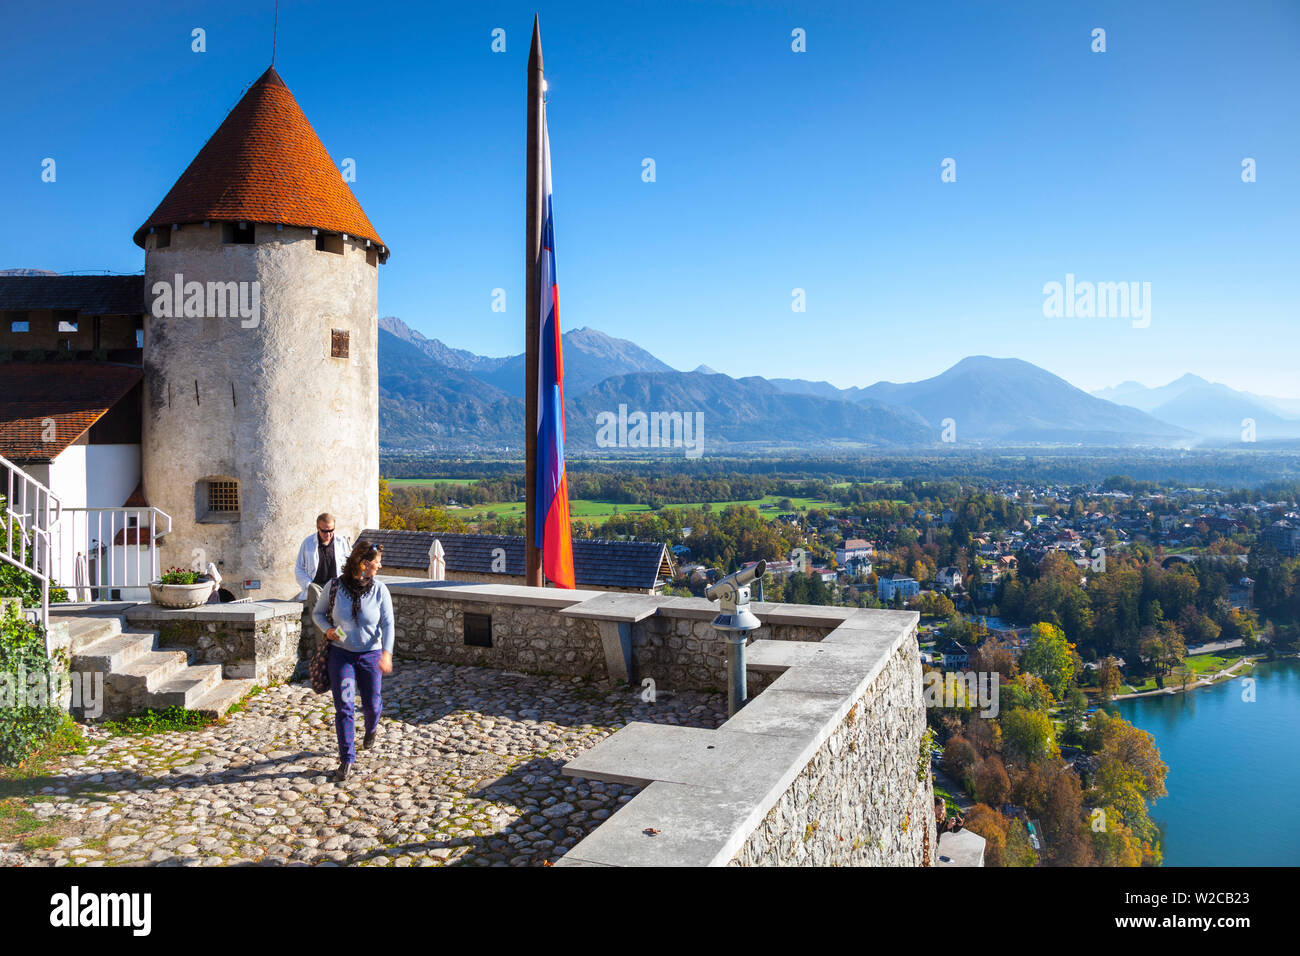 Erhöhten Blick auf die Burg von Bled und die umliegende Landschaft, den See Bled Bled, Obere Krain, Julische Alpen, Slowenien Stockfoto